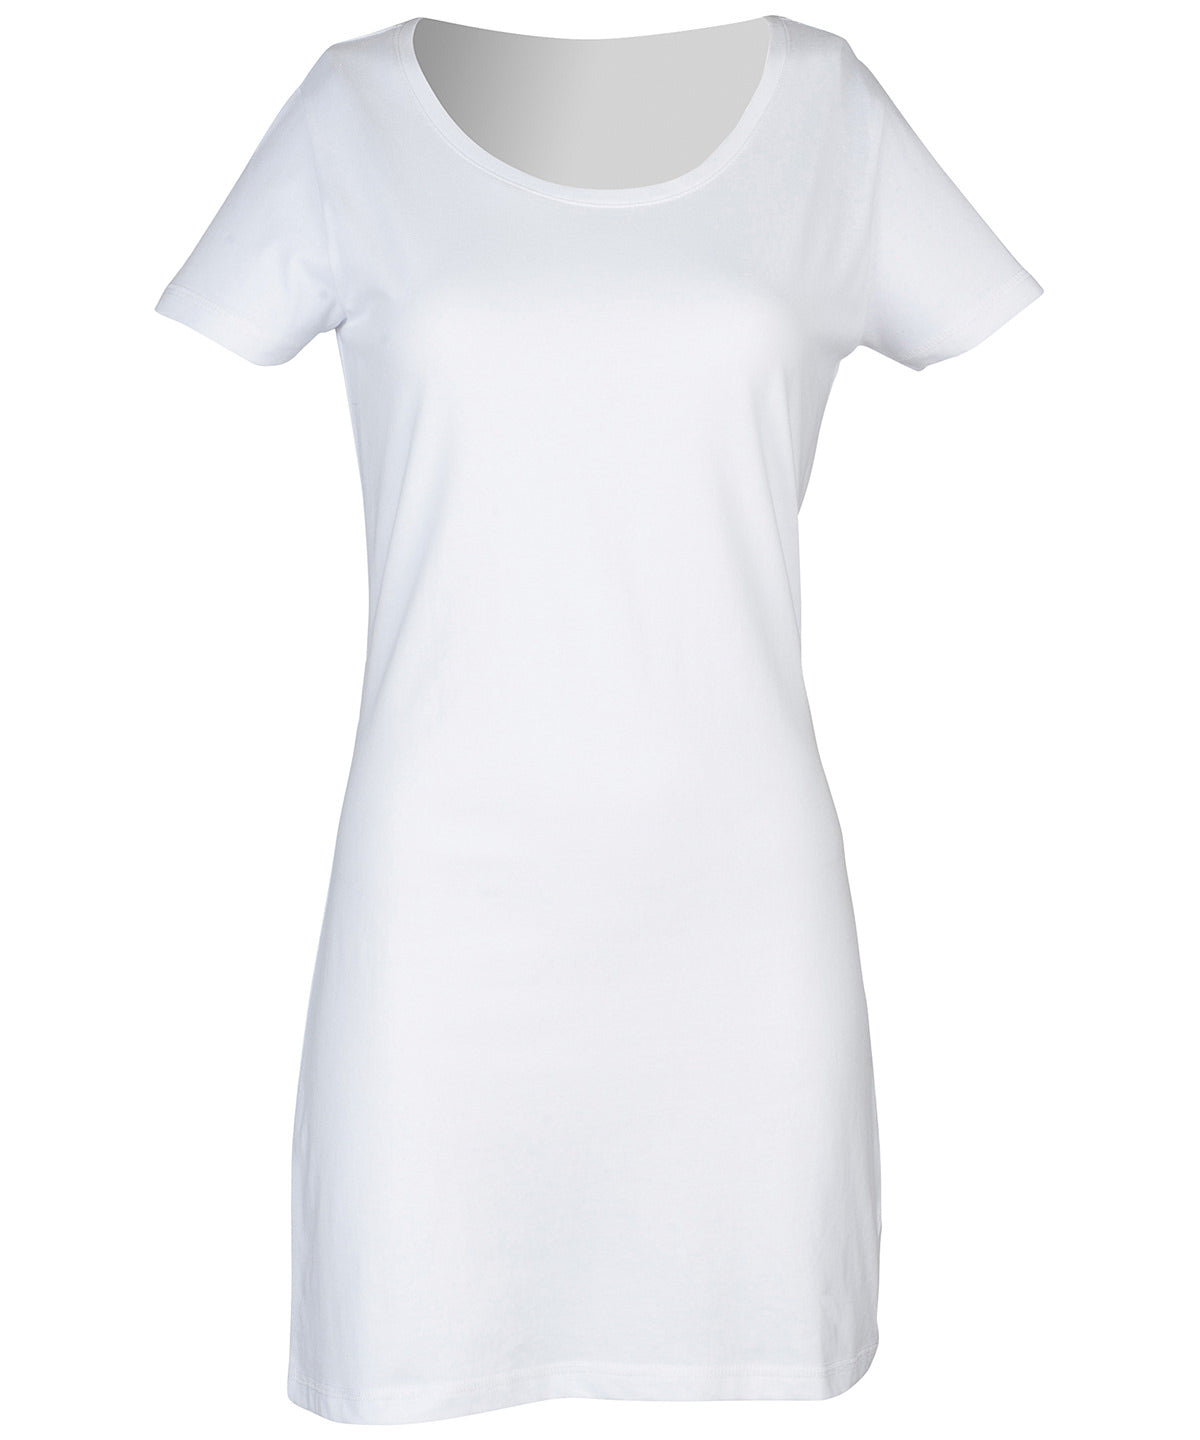 Stuttermabolir - T-shirt Dress